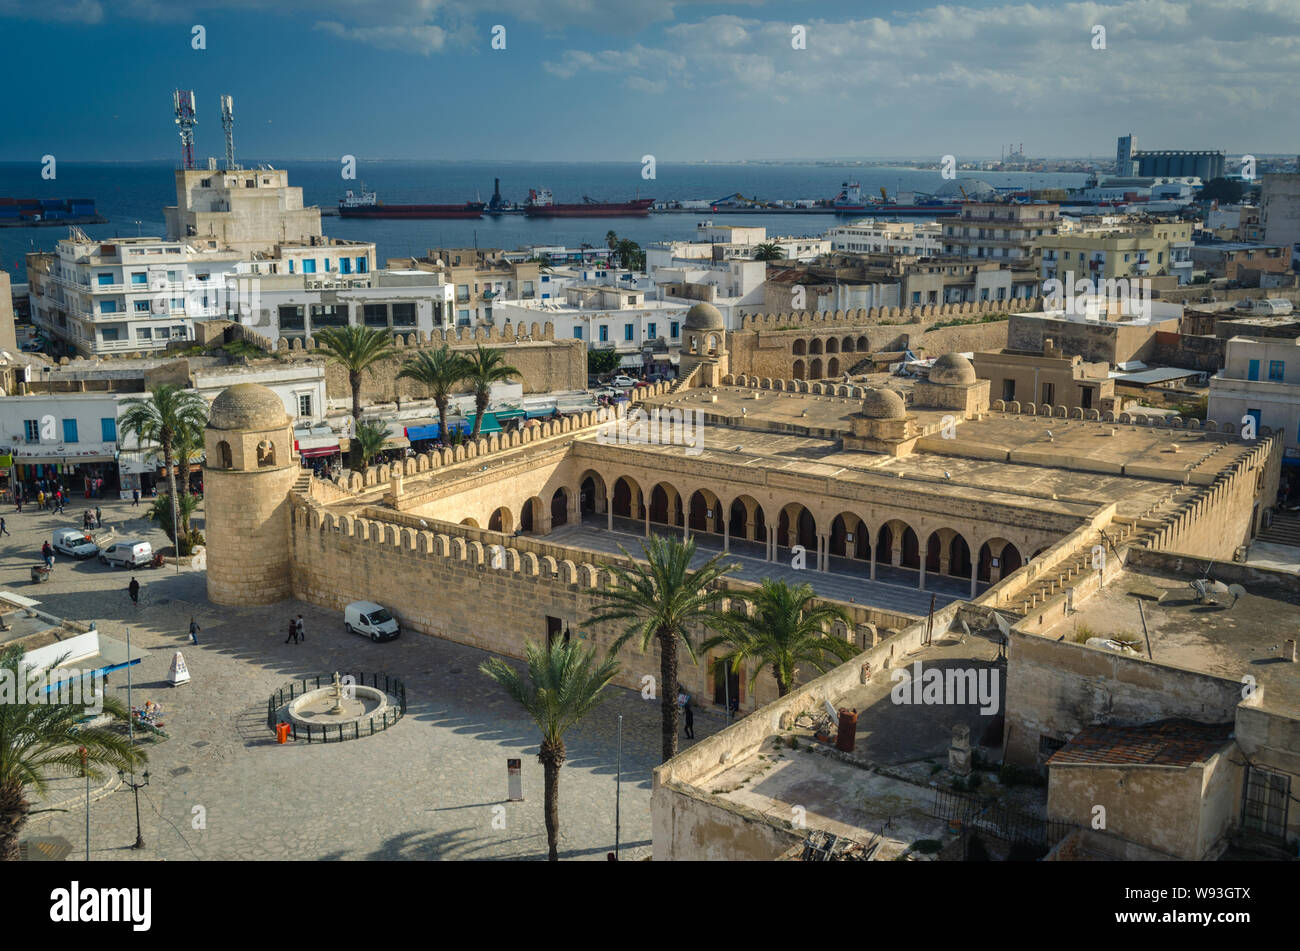 Die Große Moschee von Sousse, ein Teil des UNESCO-Weltkulturerbes Medina von Sousse. Tunesien Stockfoto